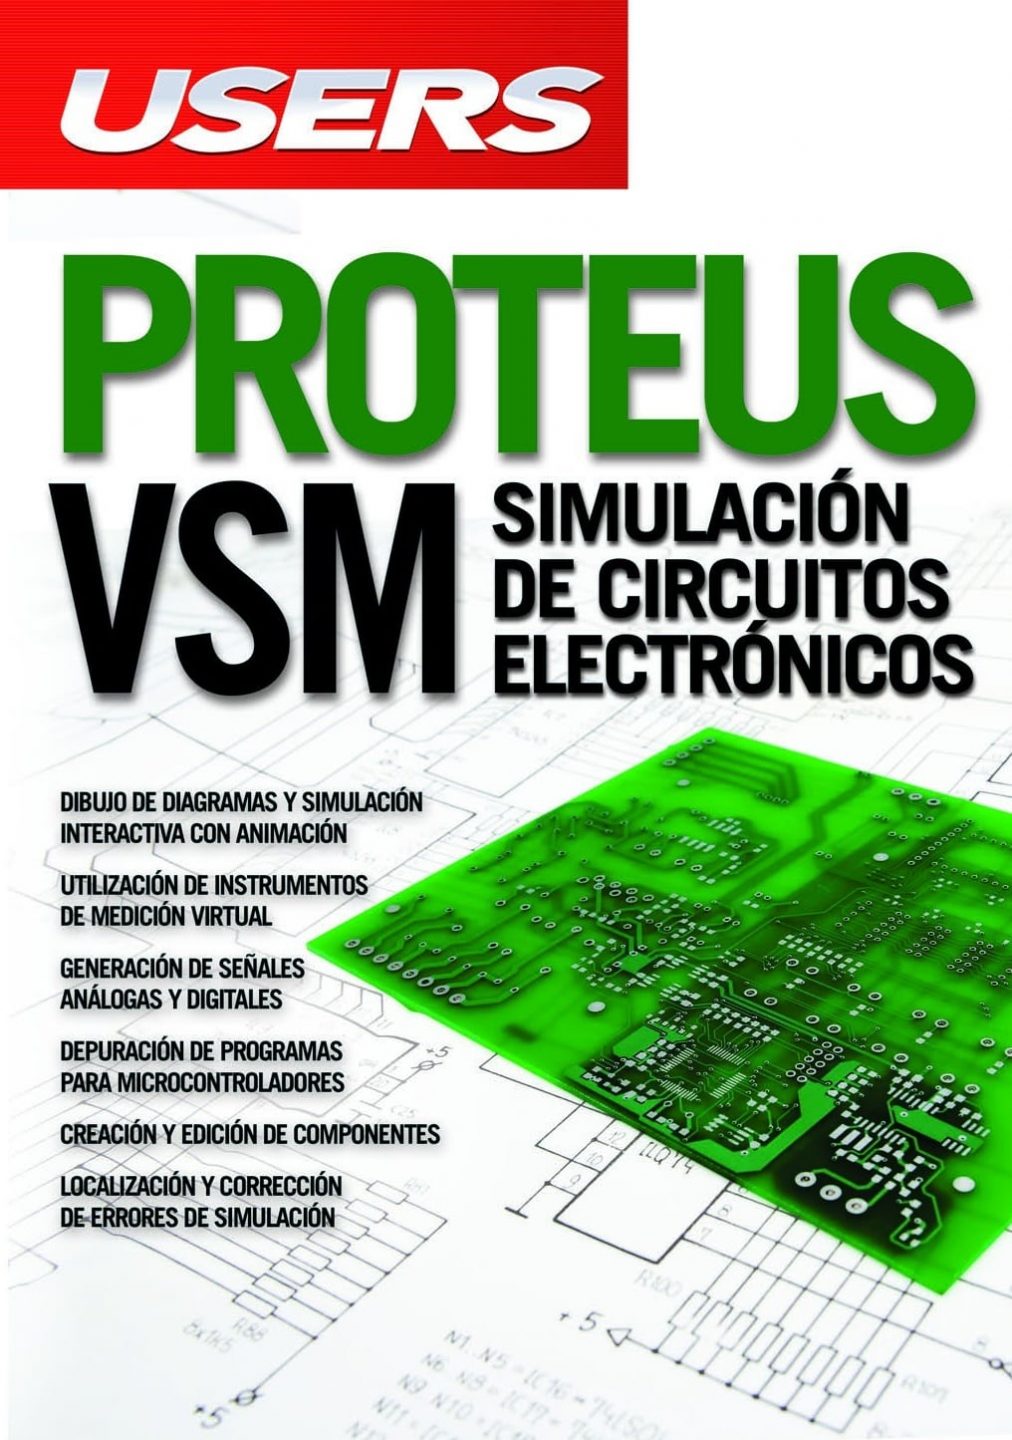 Proteus VSM: Simulación de Circuitos Electrónicos (Users)  Victor Rossano PDF